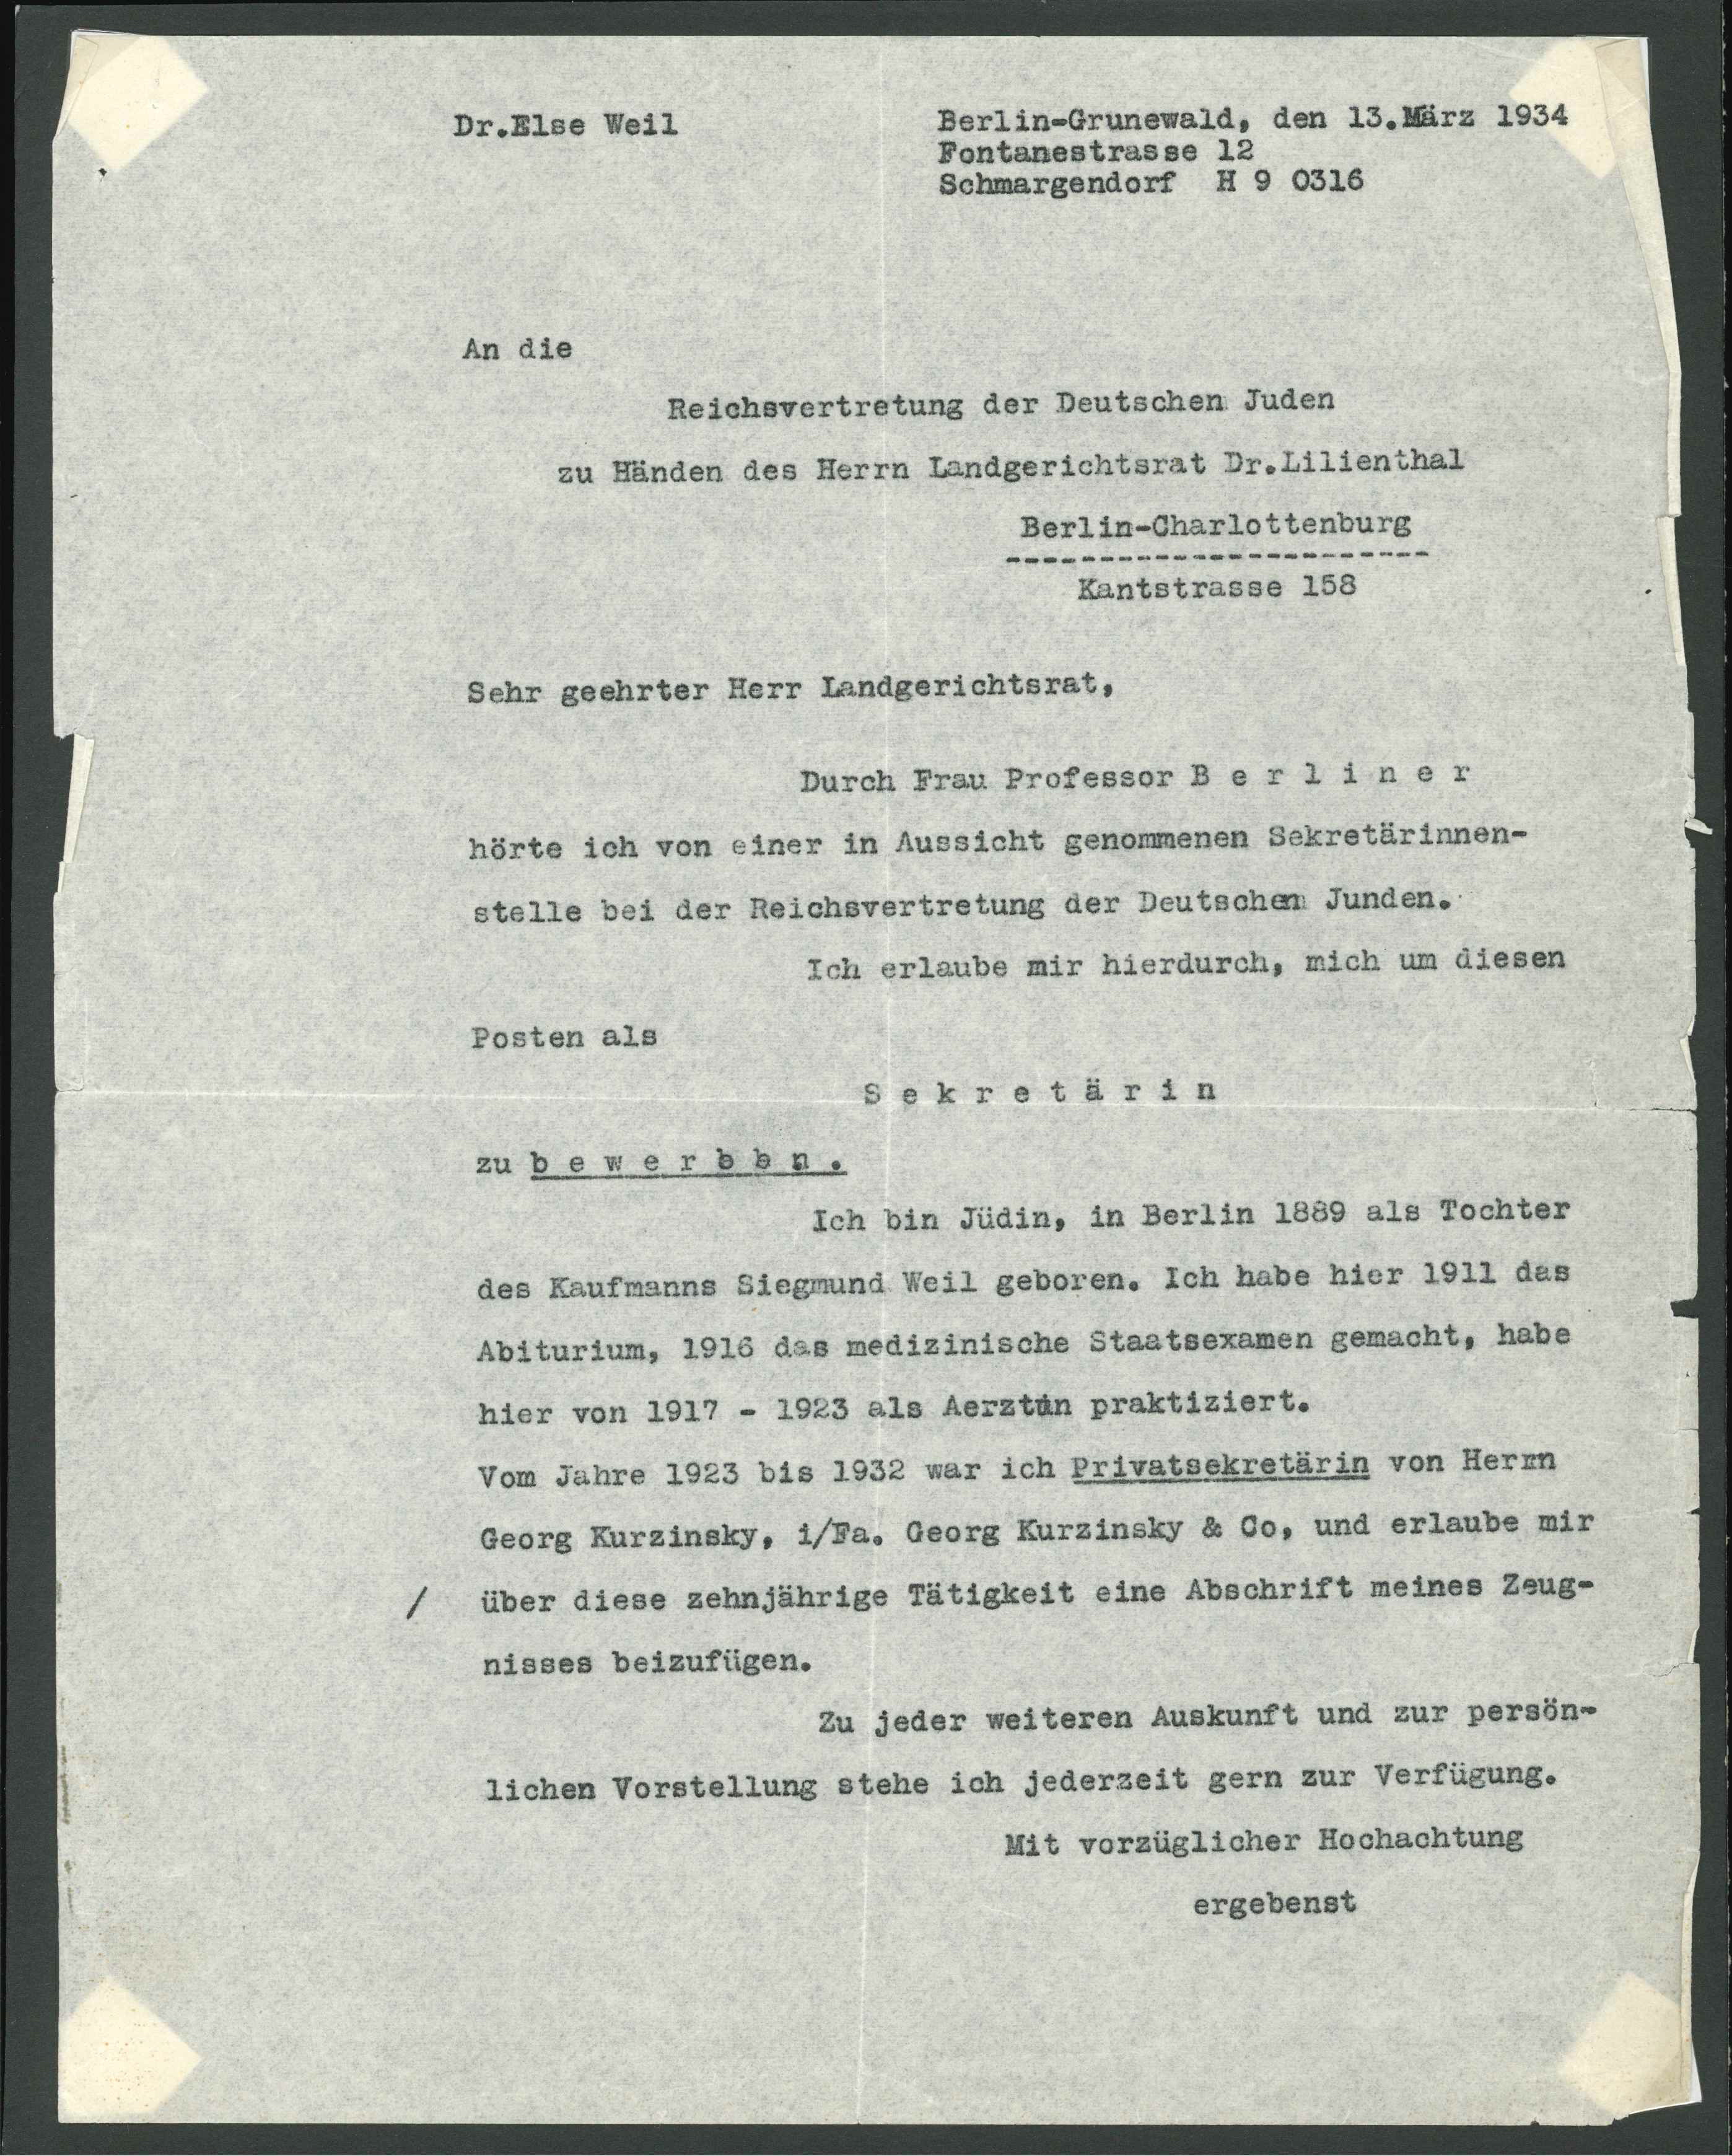 Bewerbung für Reichsvertretung der Deutschen Juden, Else Weil 1934 (KTL CC BY-NC-SA)